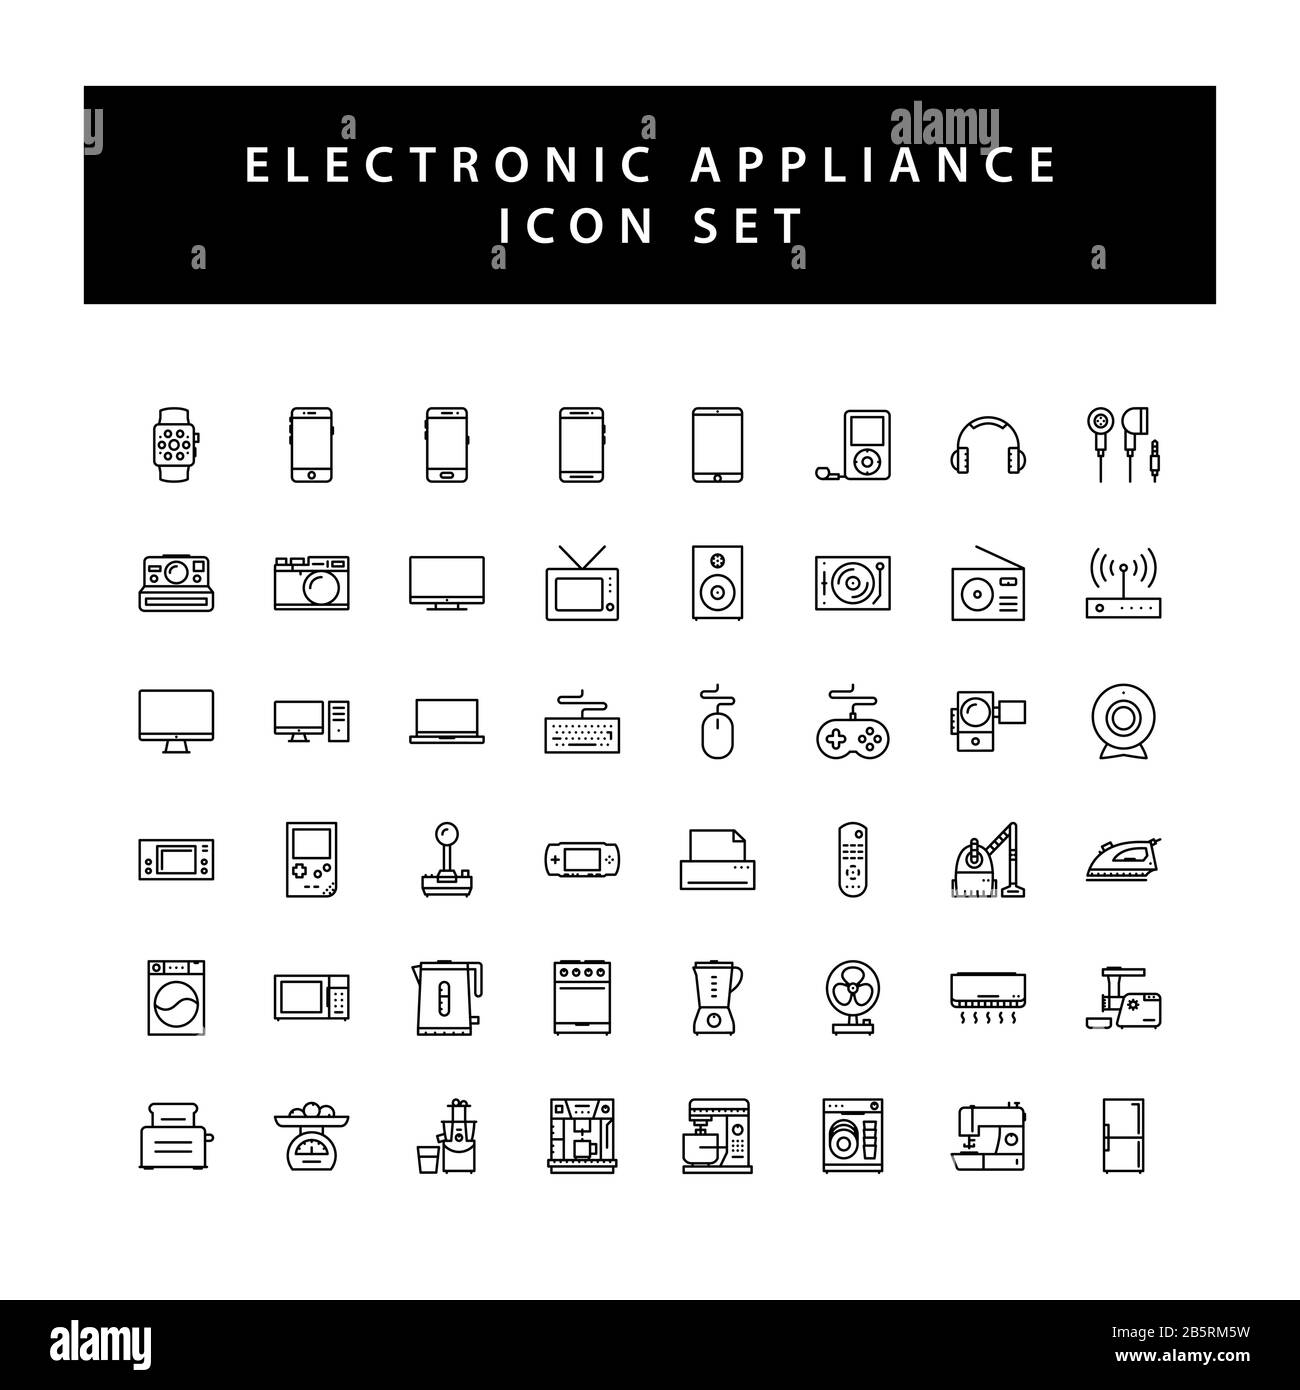 Elektronische Icon-Sets für Haushaltsgeräte mit schwarzem Umriss. Stock Vektor